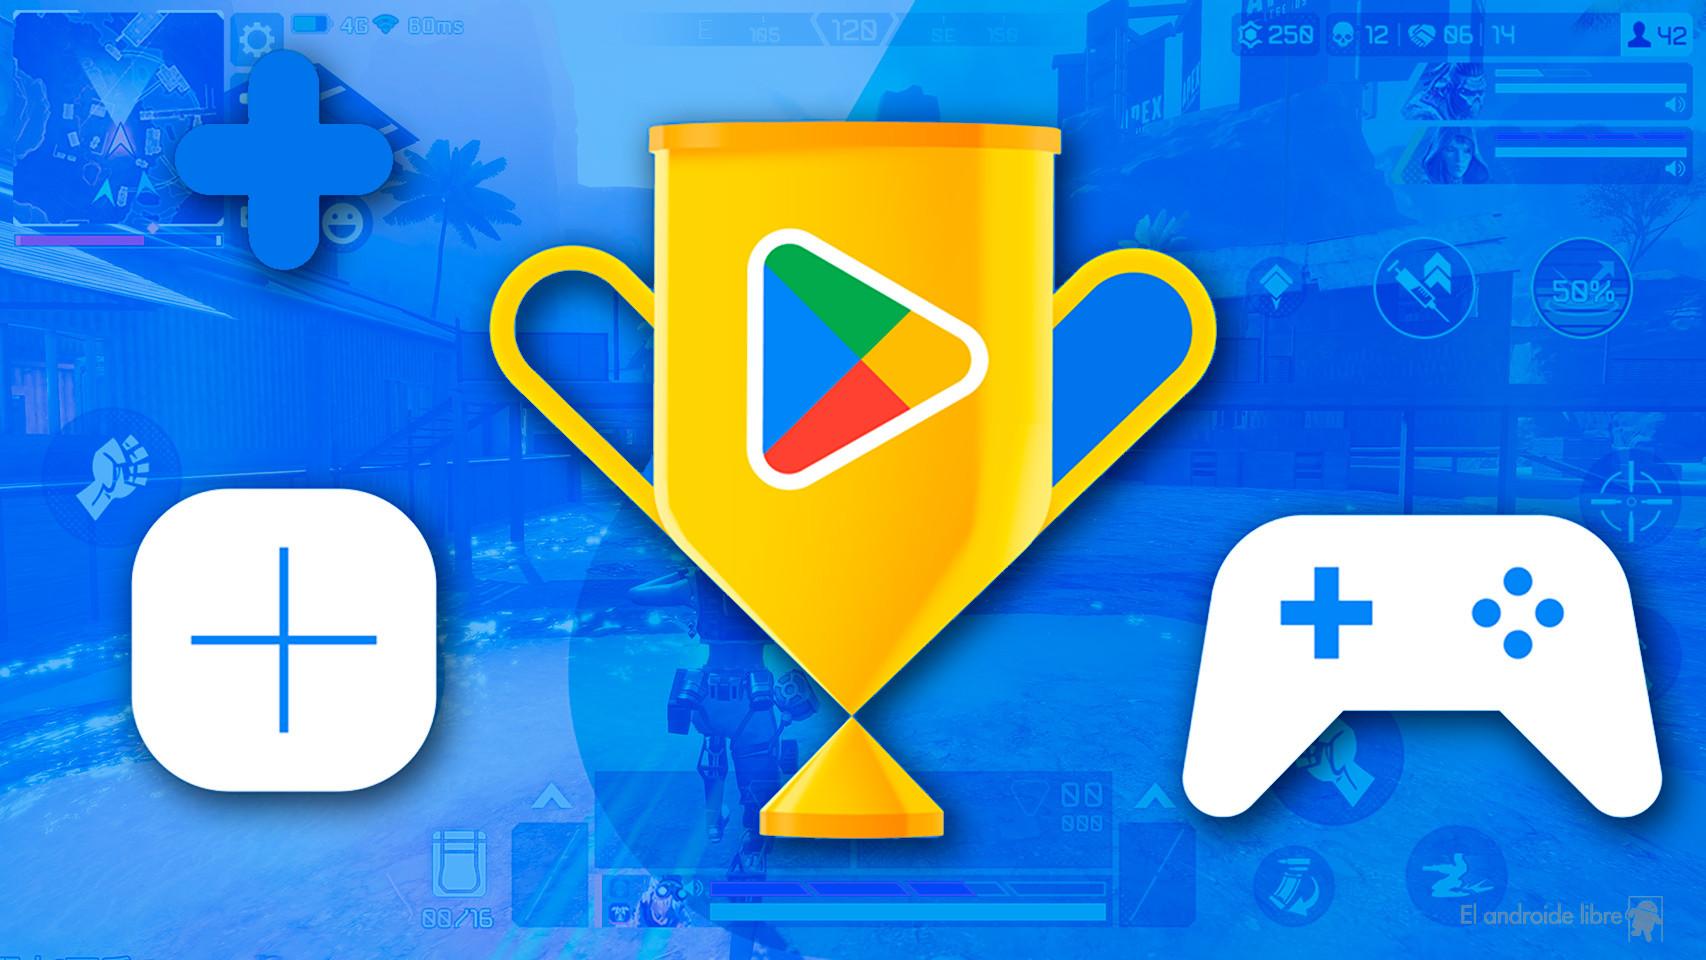 Juegos gratis en Android: los mejores títulos de estrategia en Google Play, DEPOR-PLAY